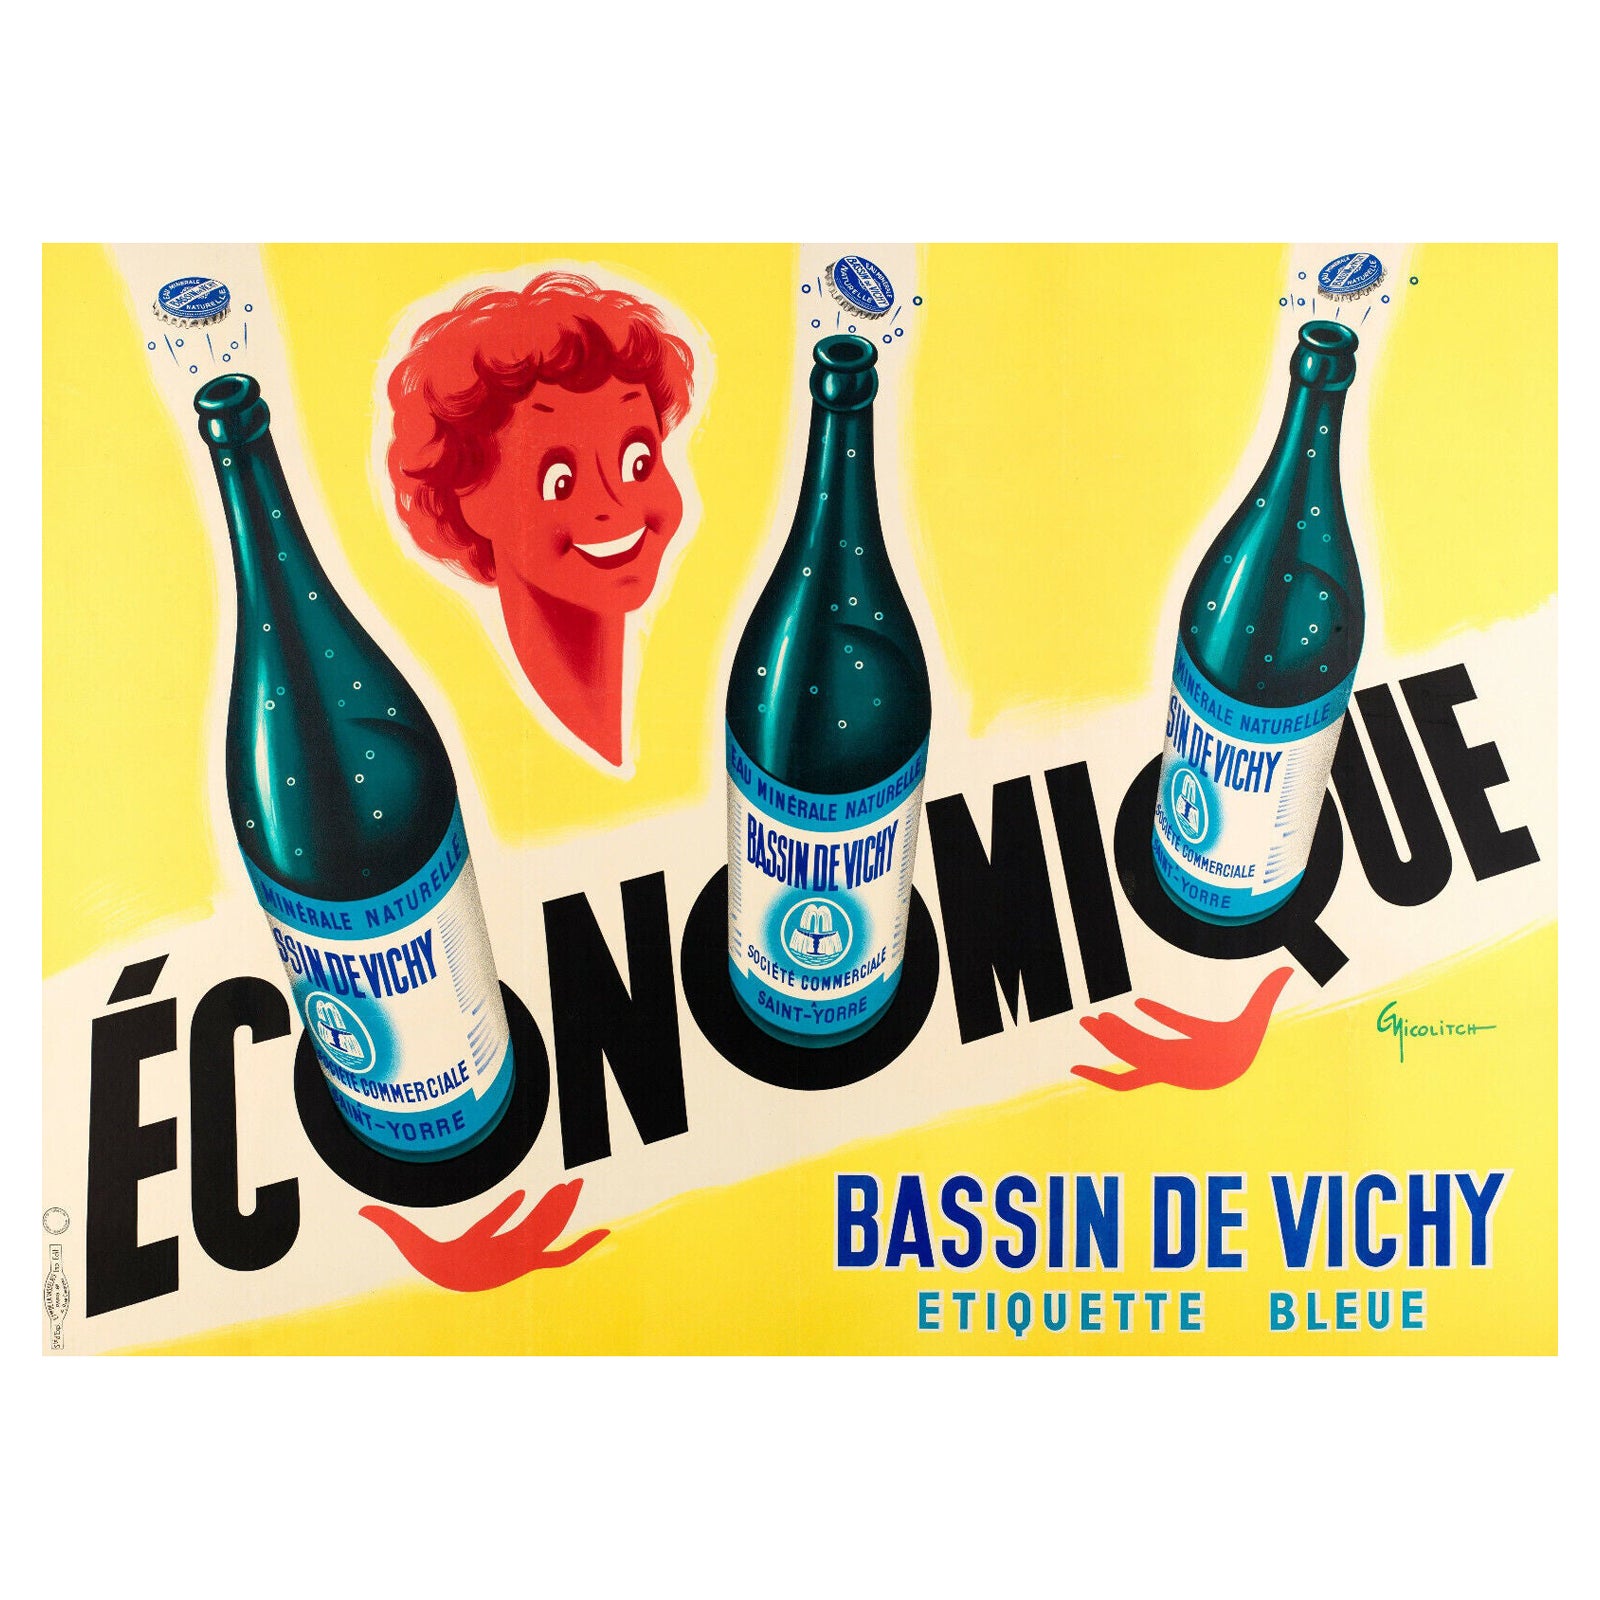 Affiche originale Vintage By-G. Nicolitch-Vichy Saint-Yorre-Eau minérale, 1953